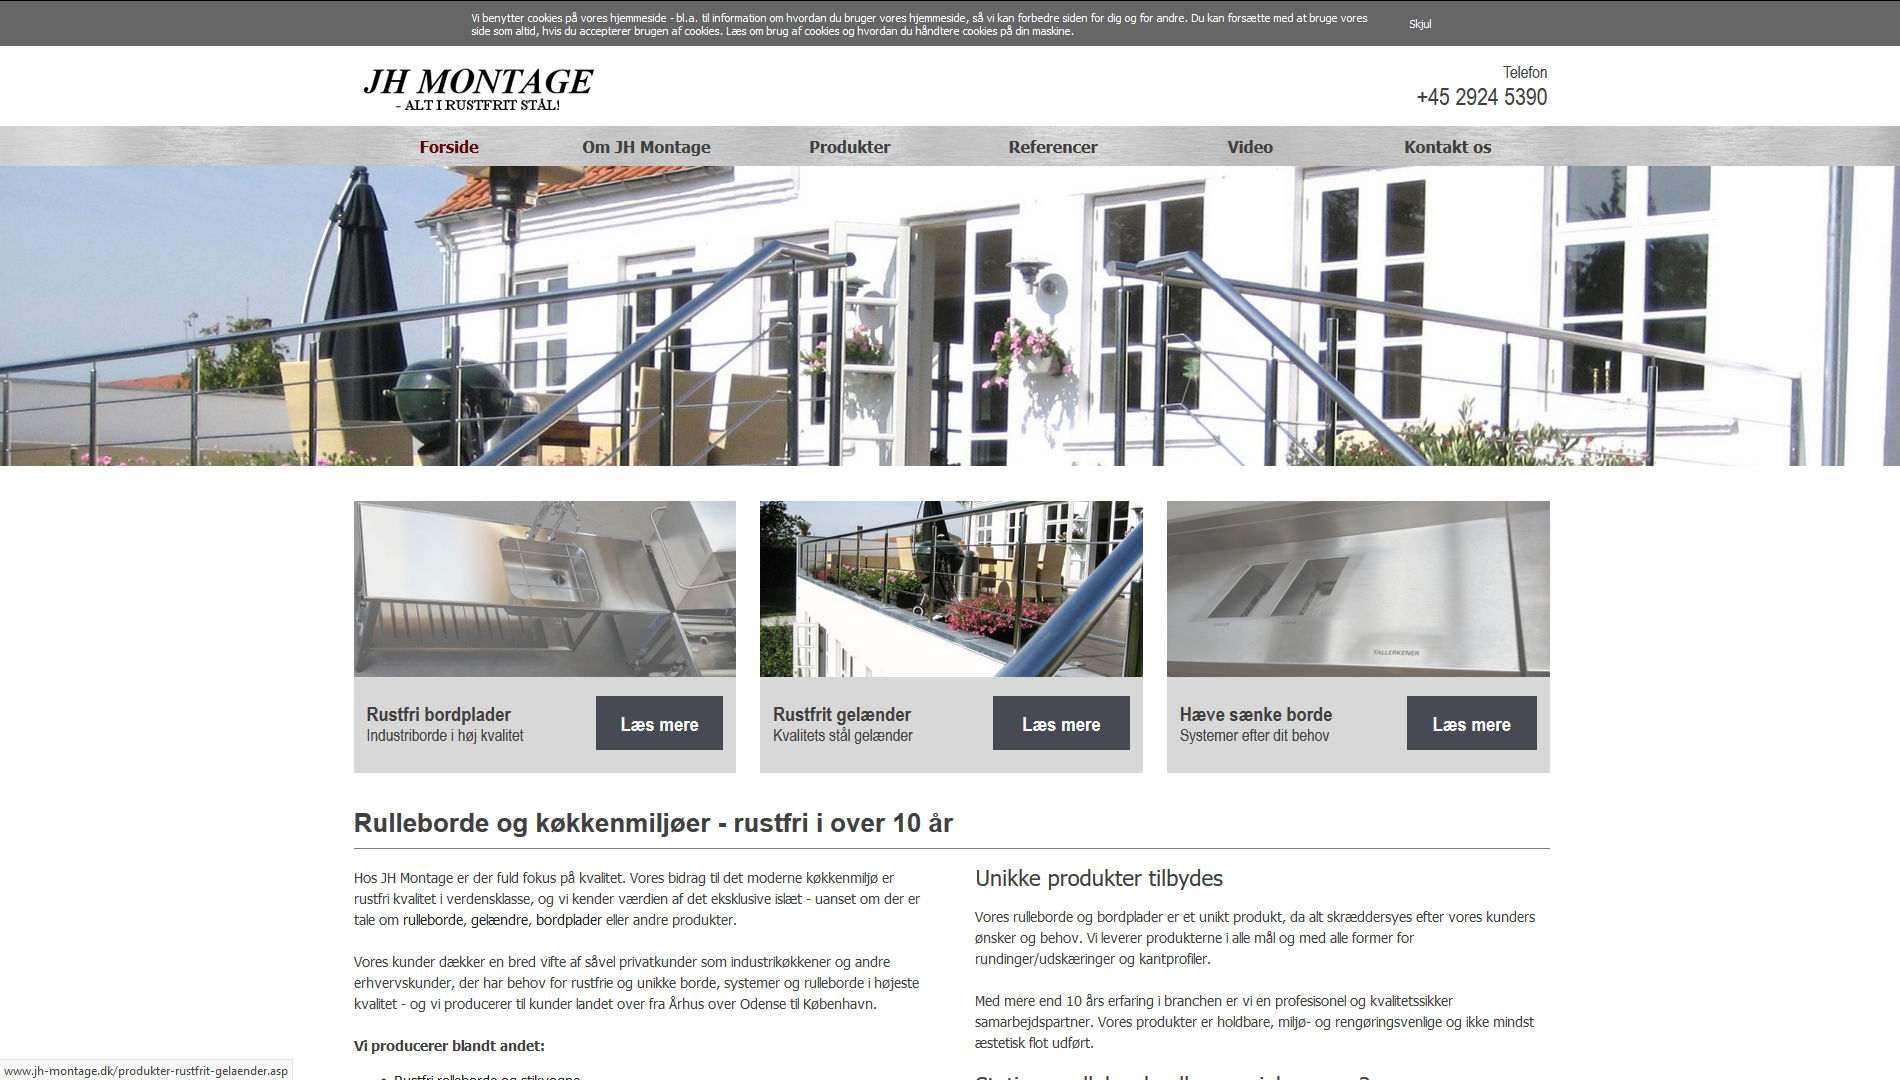 jh-montage.dk - informationsside med tilvalgte moduler